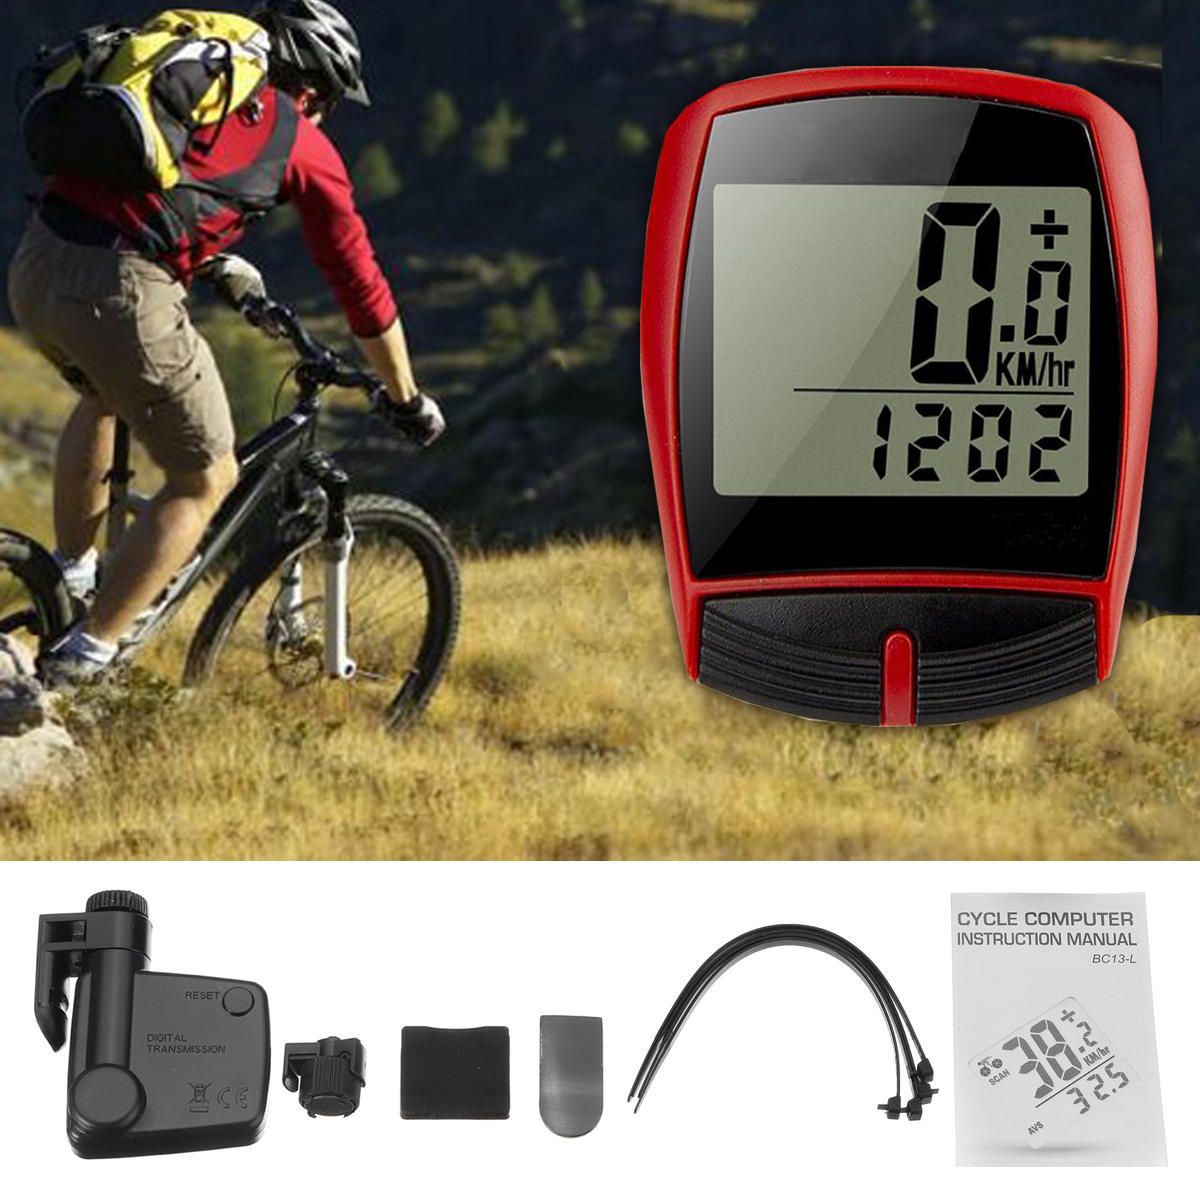 LCD Digital Bike Cycling Computer Waterproof Odometer Speedometer Stopwatch UK 